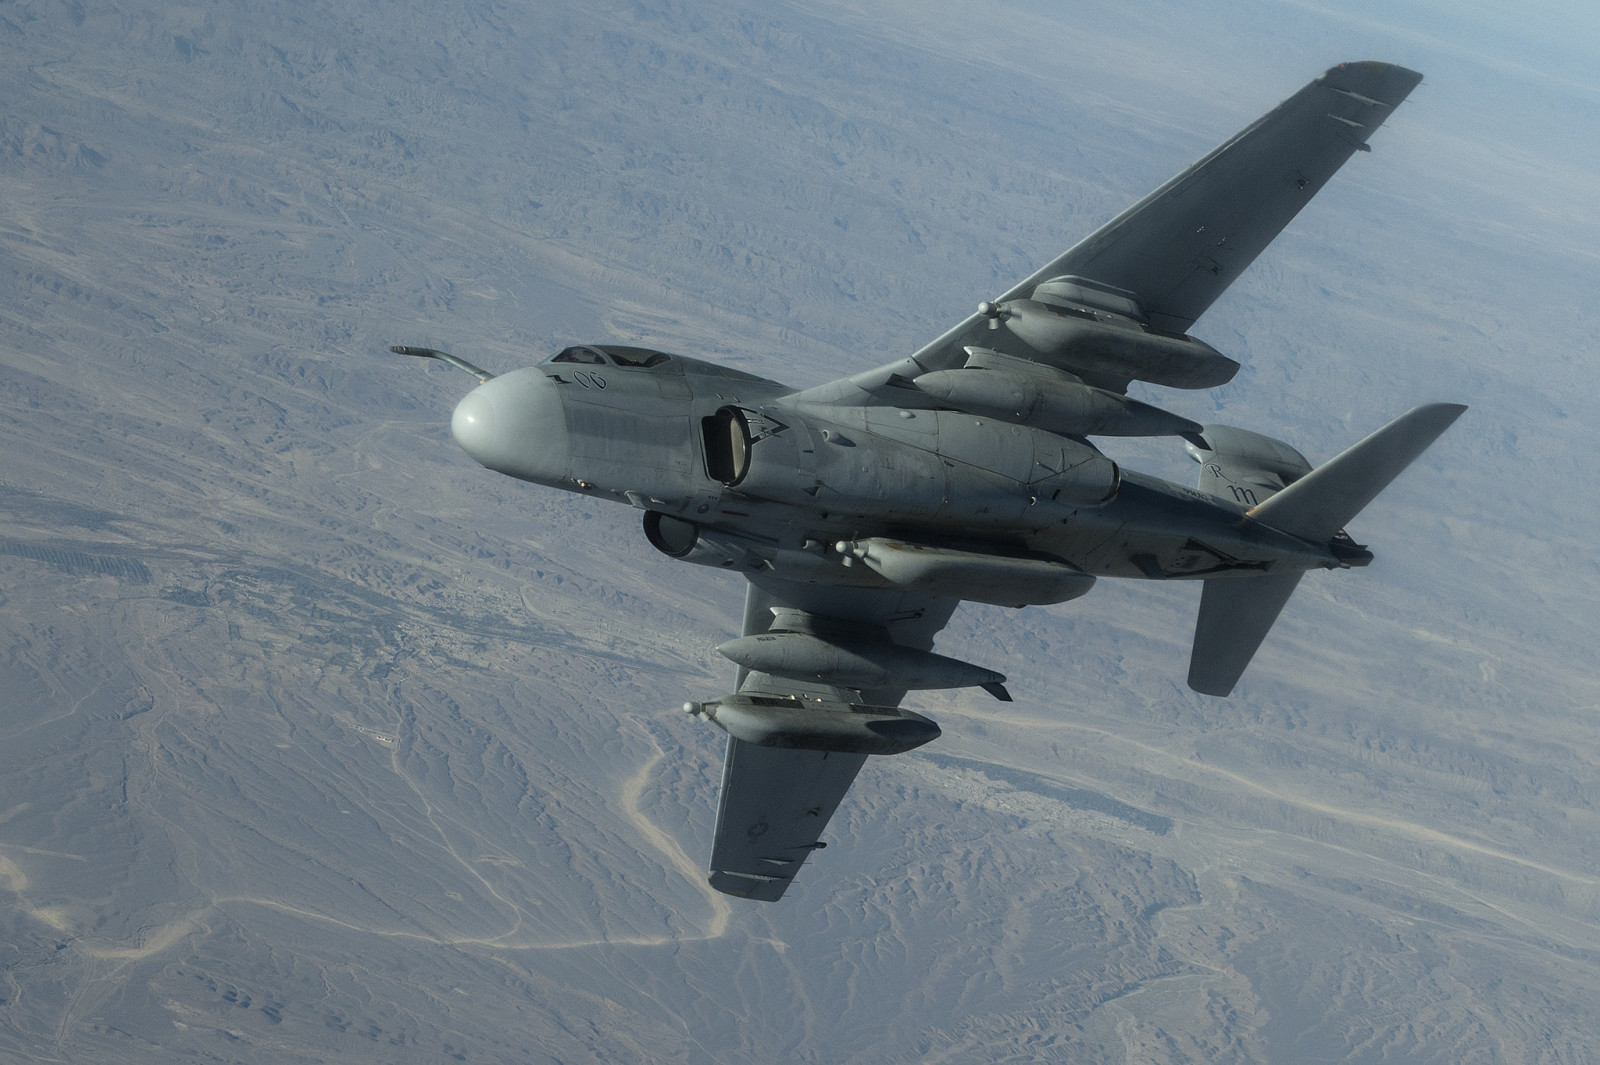 เครื่องบิน, สำรับ, Grumman, ผู้เที่ยวเดินด้อม ๆ มองๆ, EA-6B